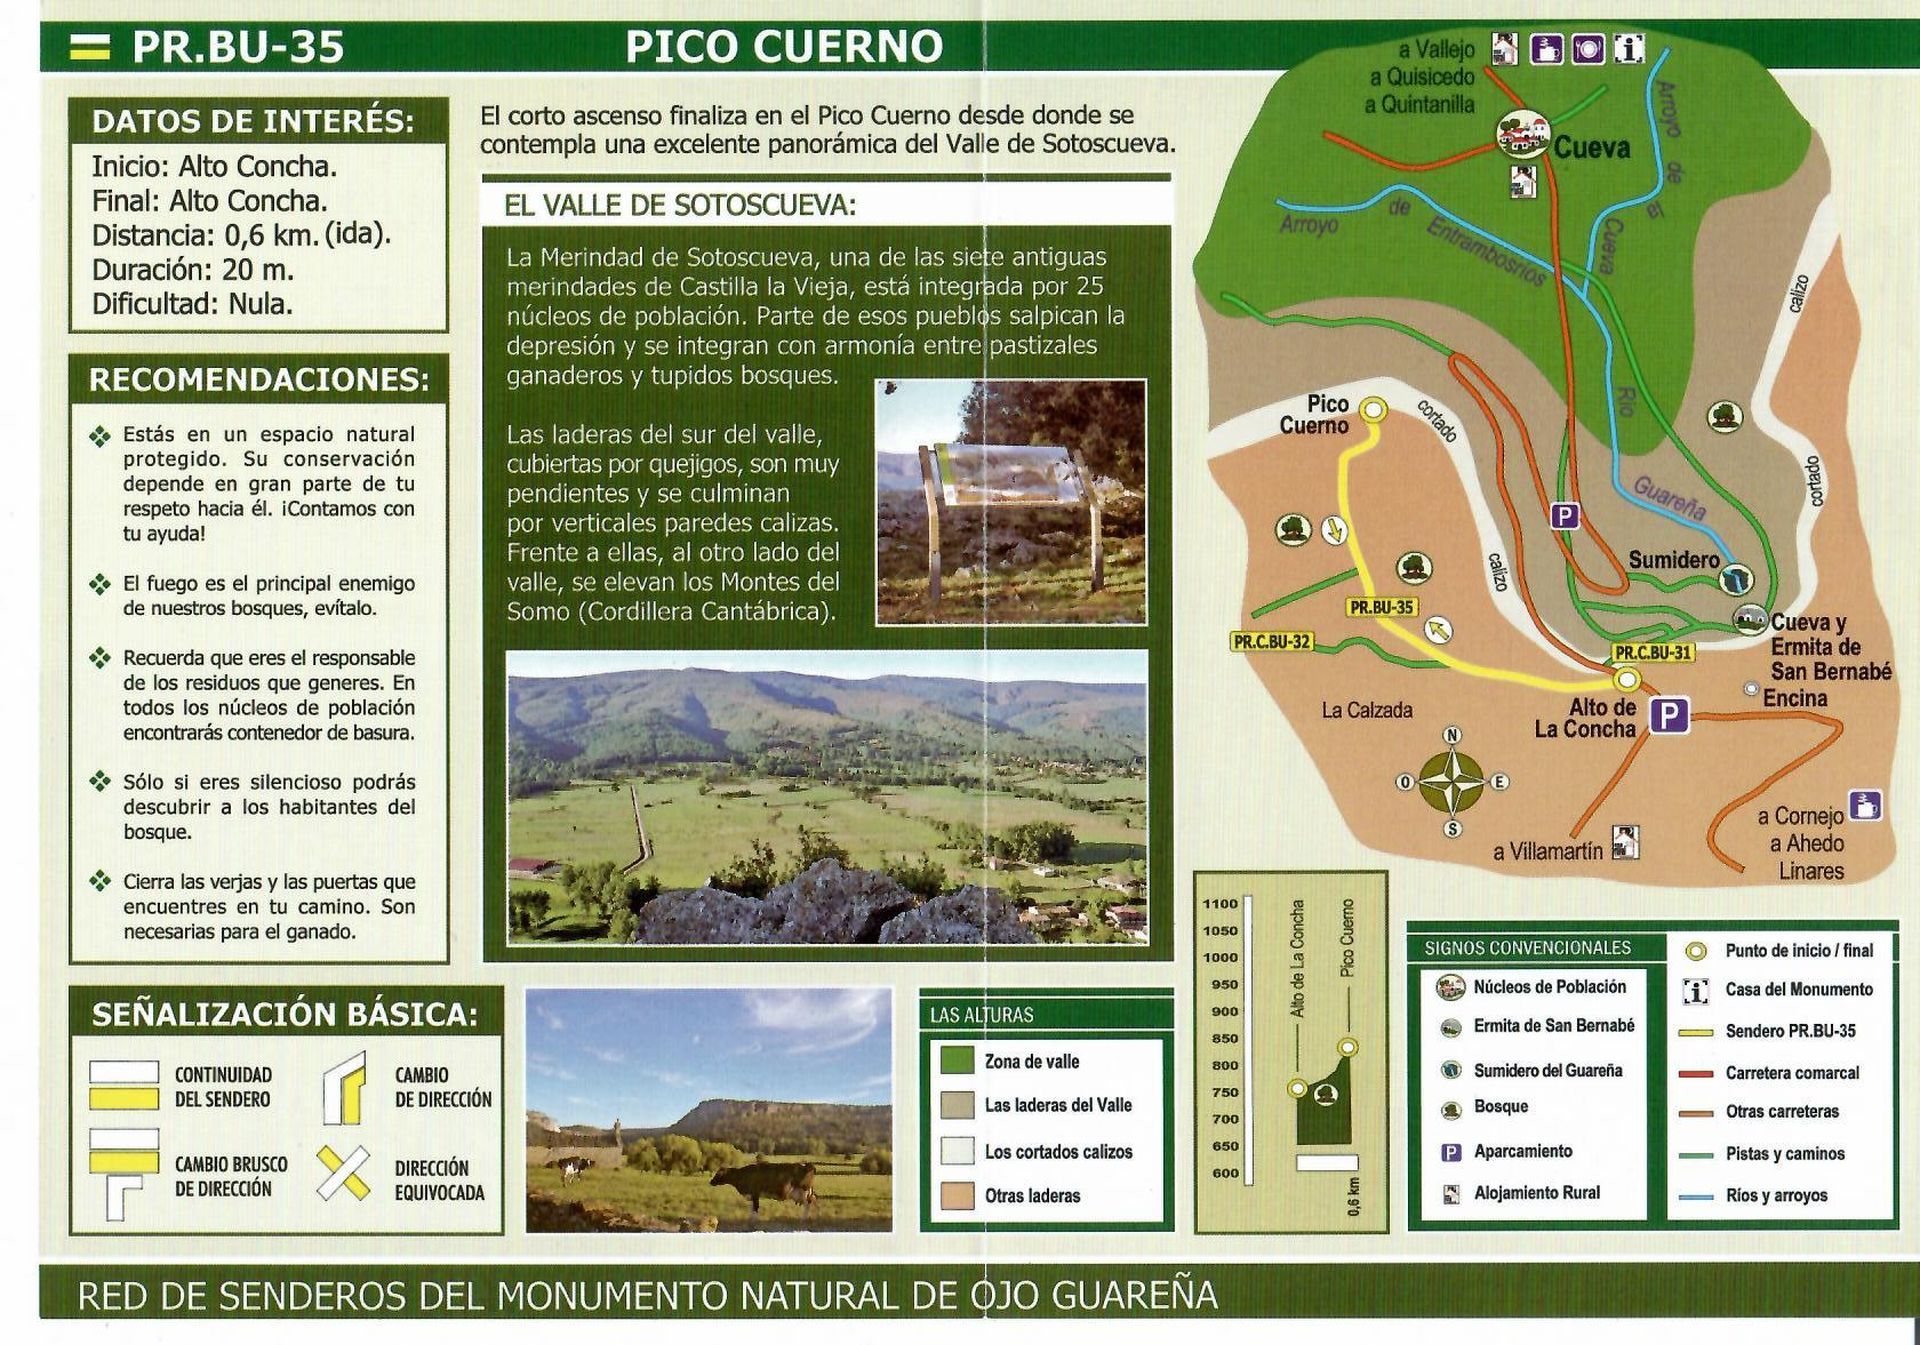 PR.C.BU-35: Pico Cuerno